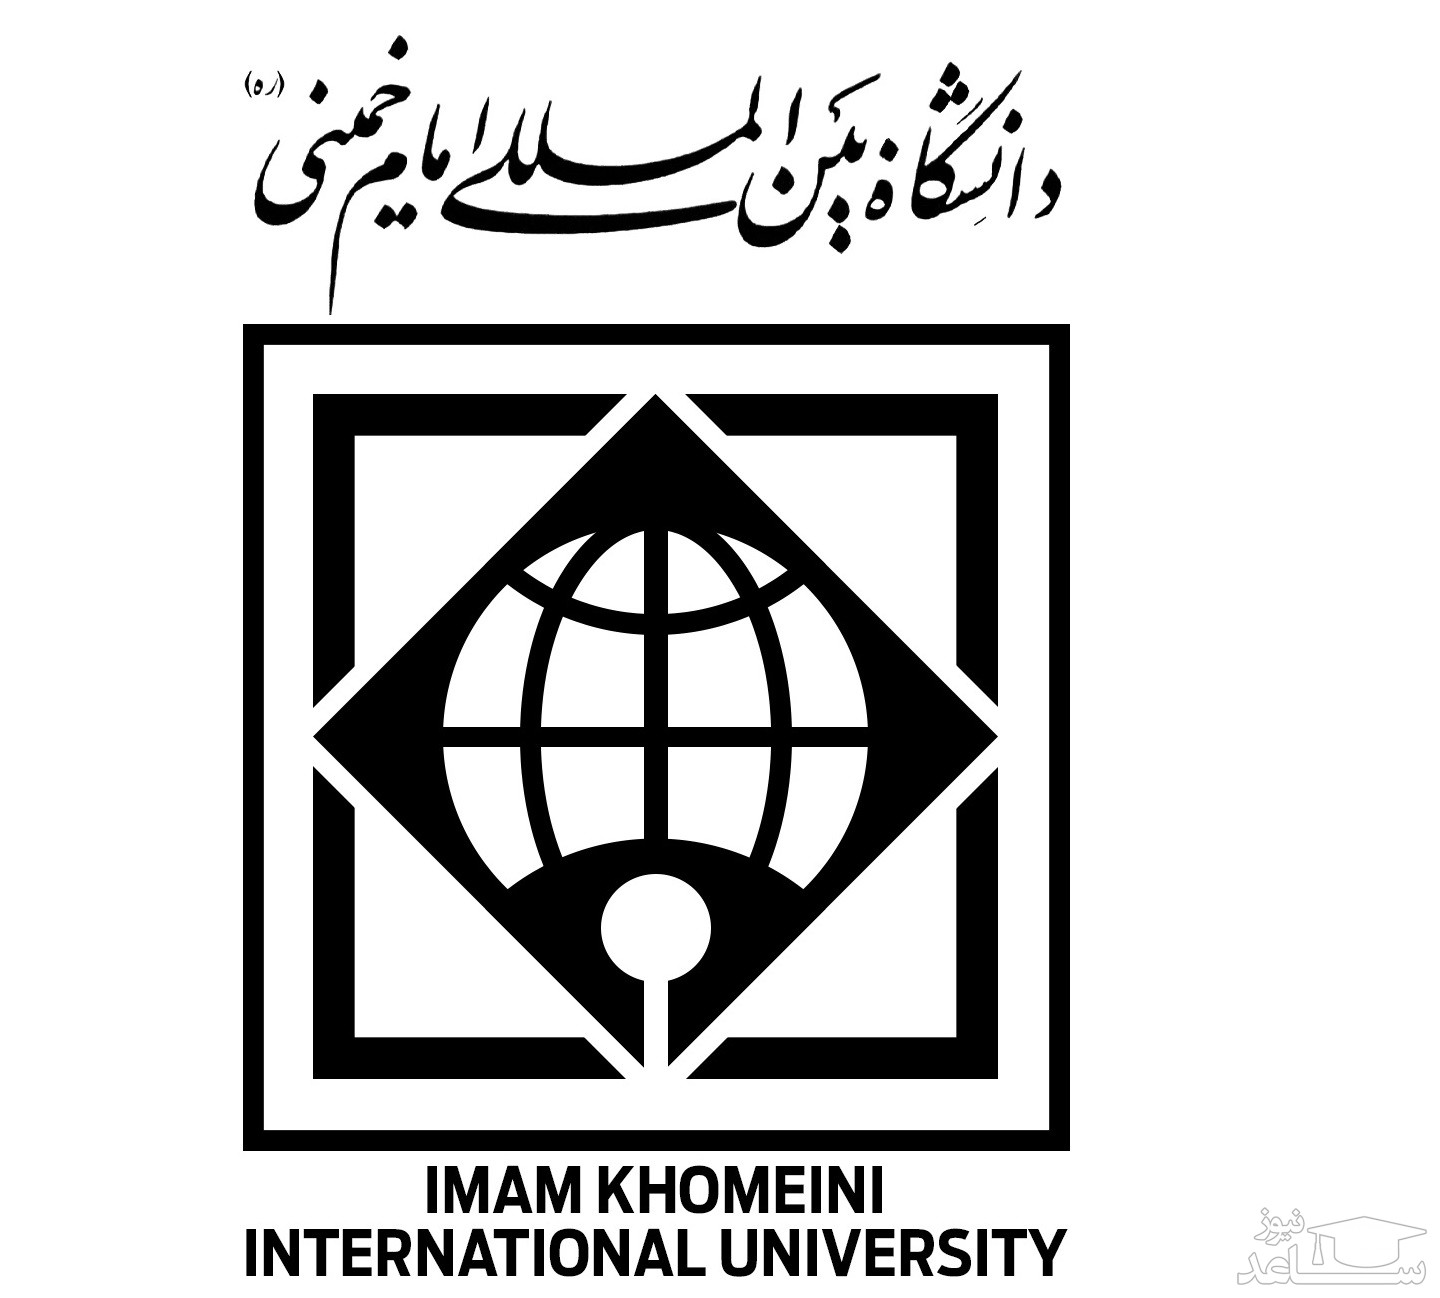 فیش حقوقی کارکنان و بازنشستگان دانشگاه بین المللی امام خمینی